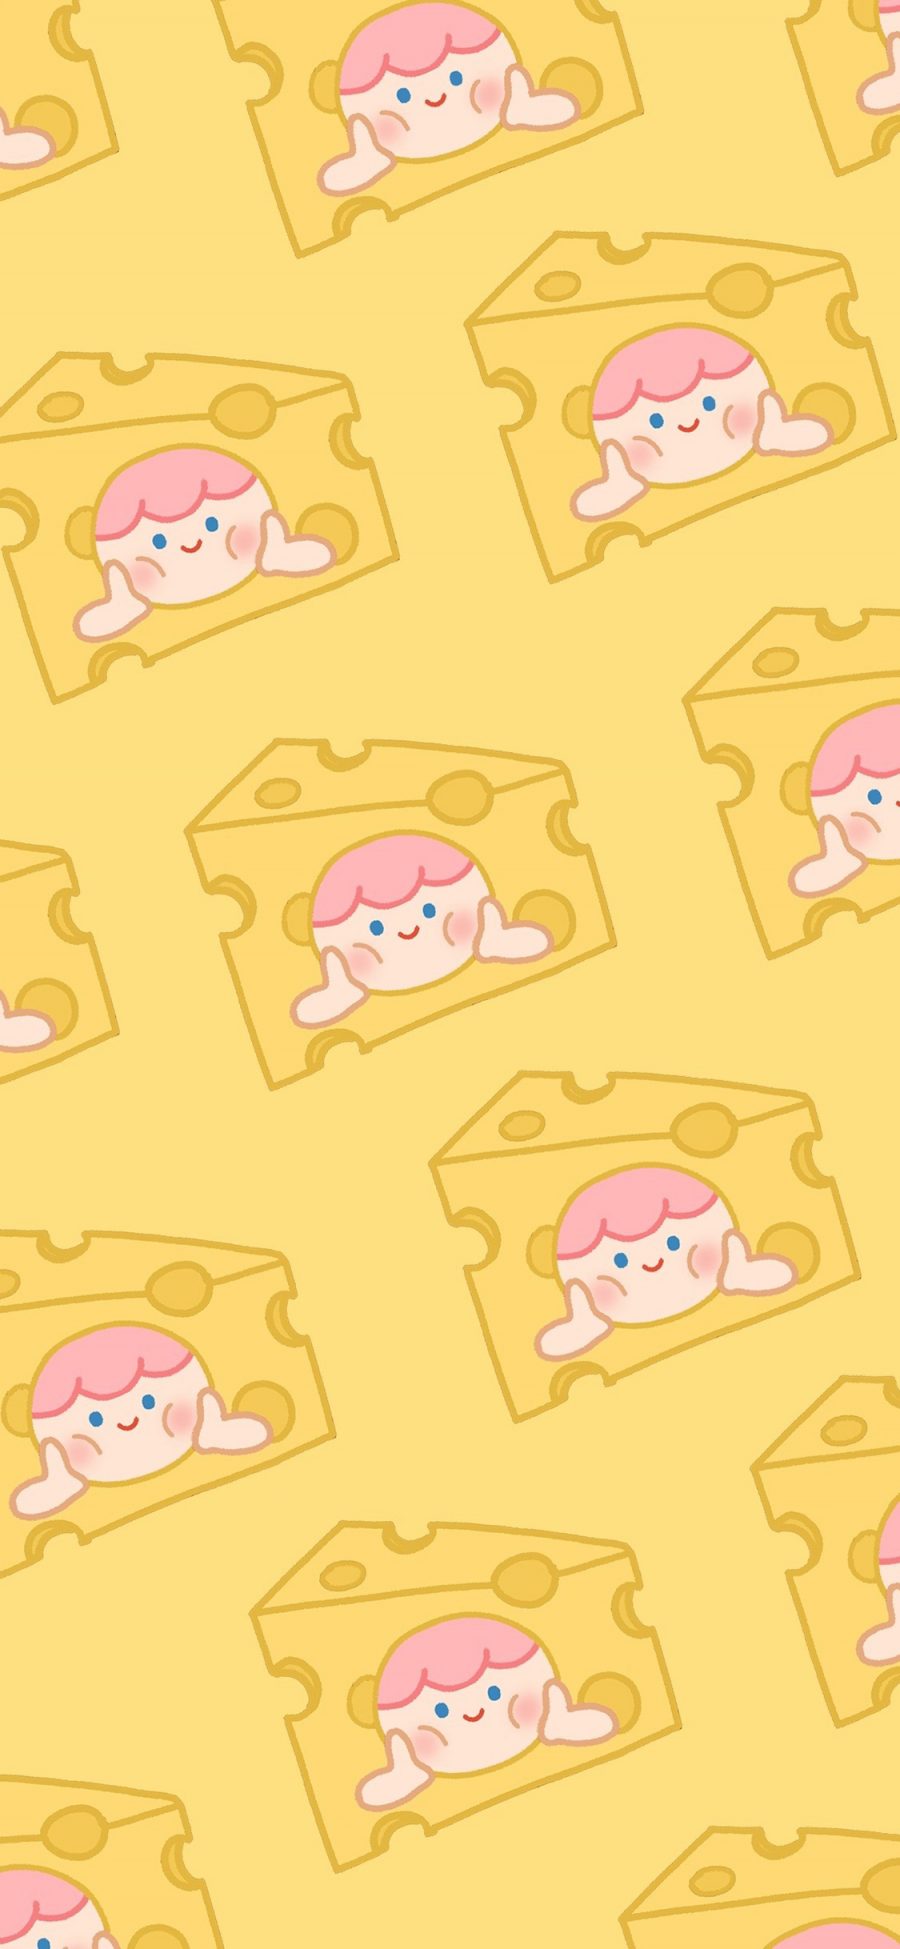 [2436×1125]奶酪 黄色 女孩 挤脸 平铺 苹果手机动漫壁纸图片